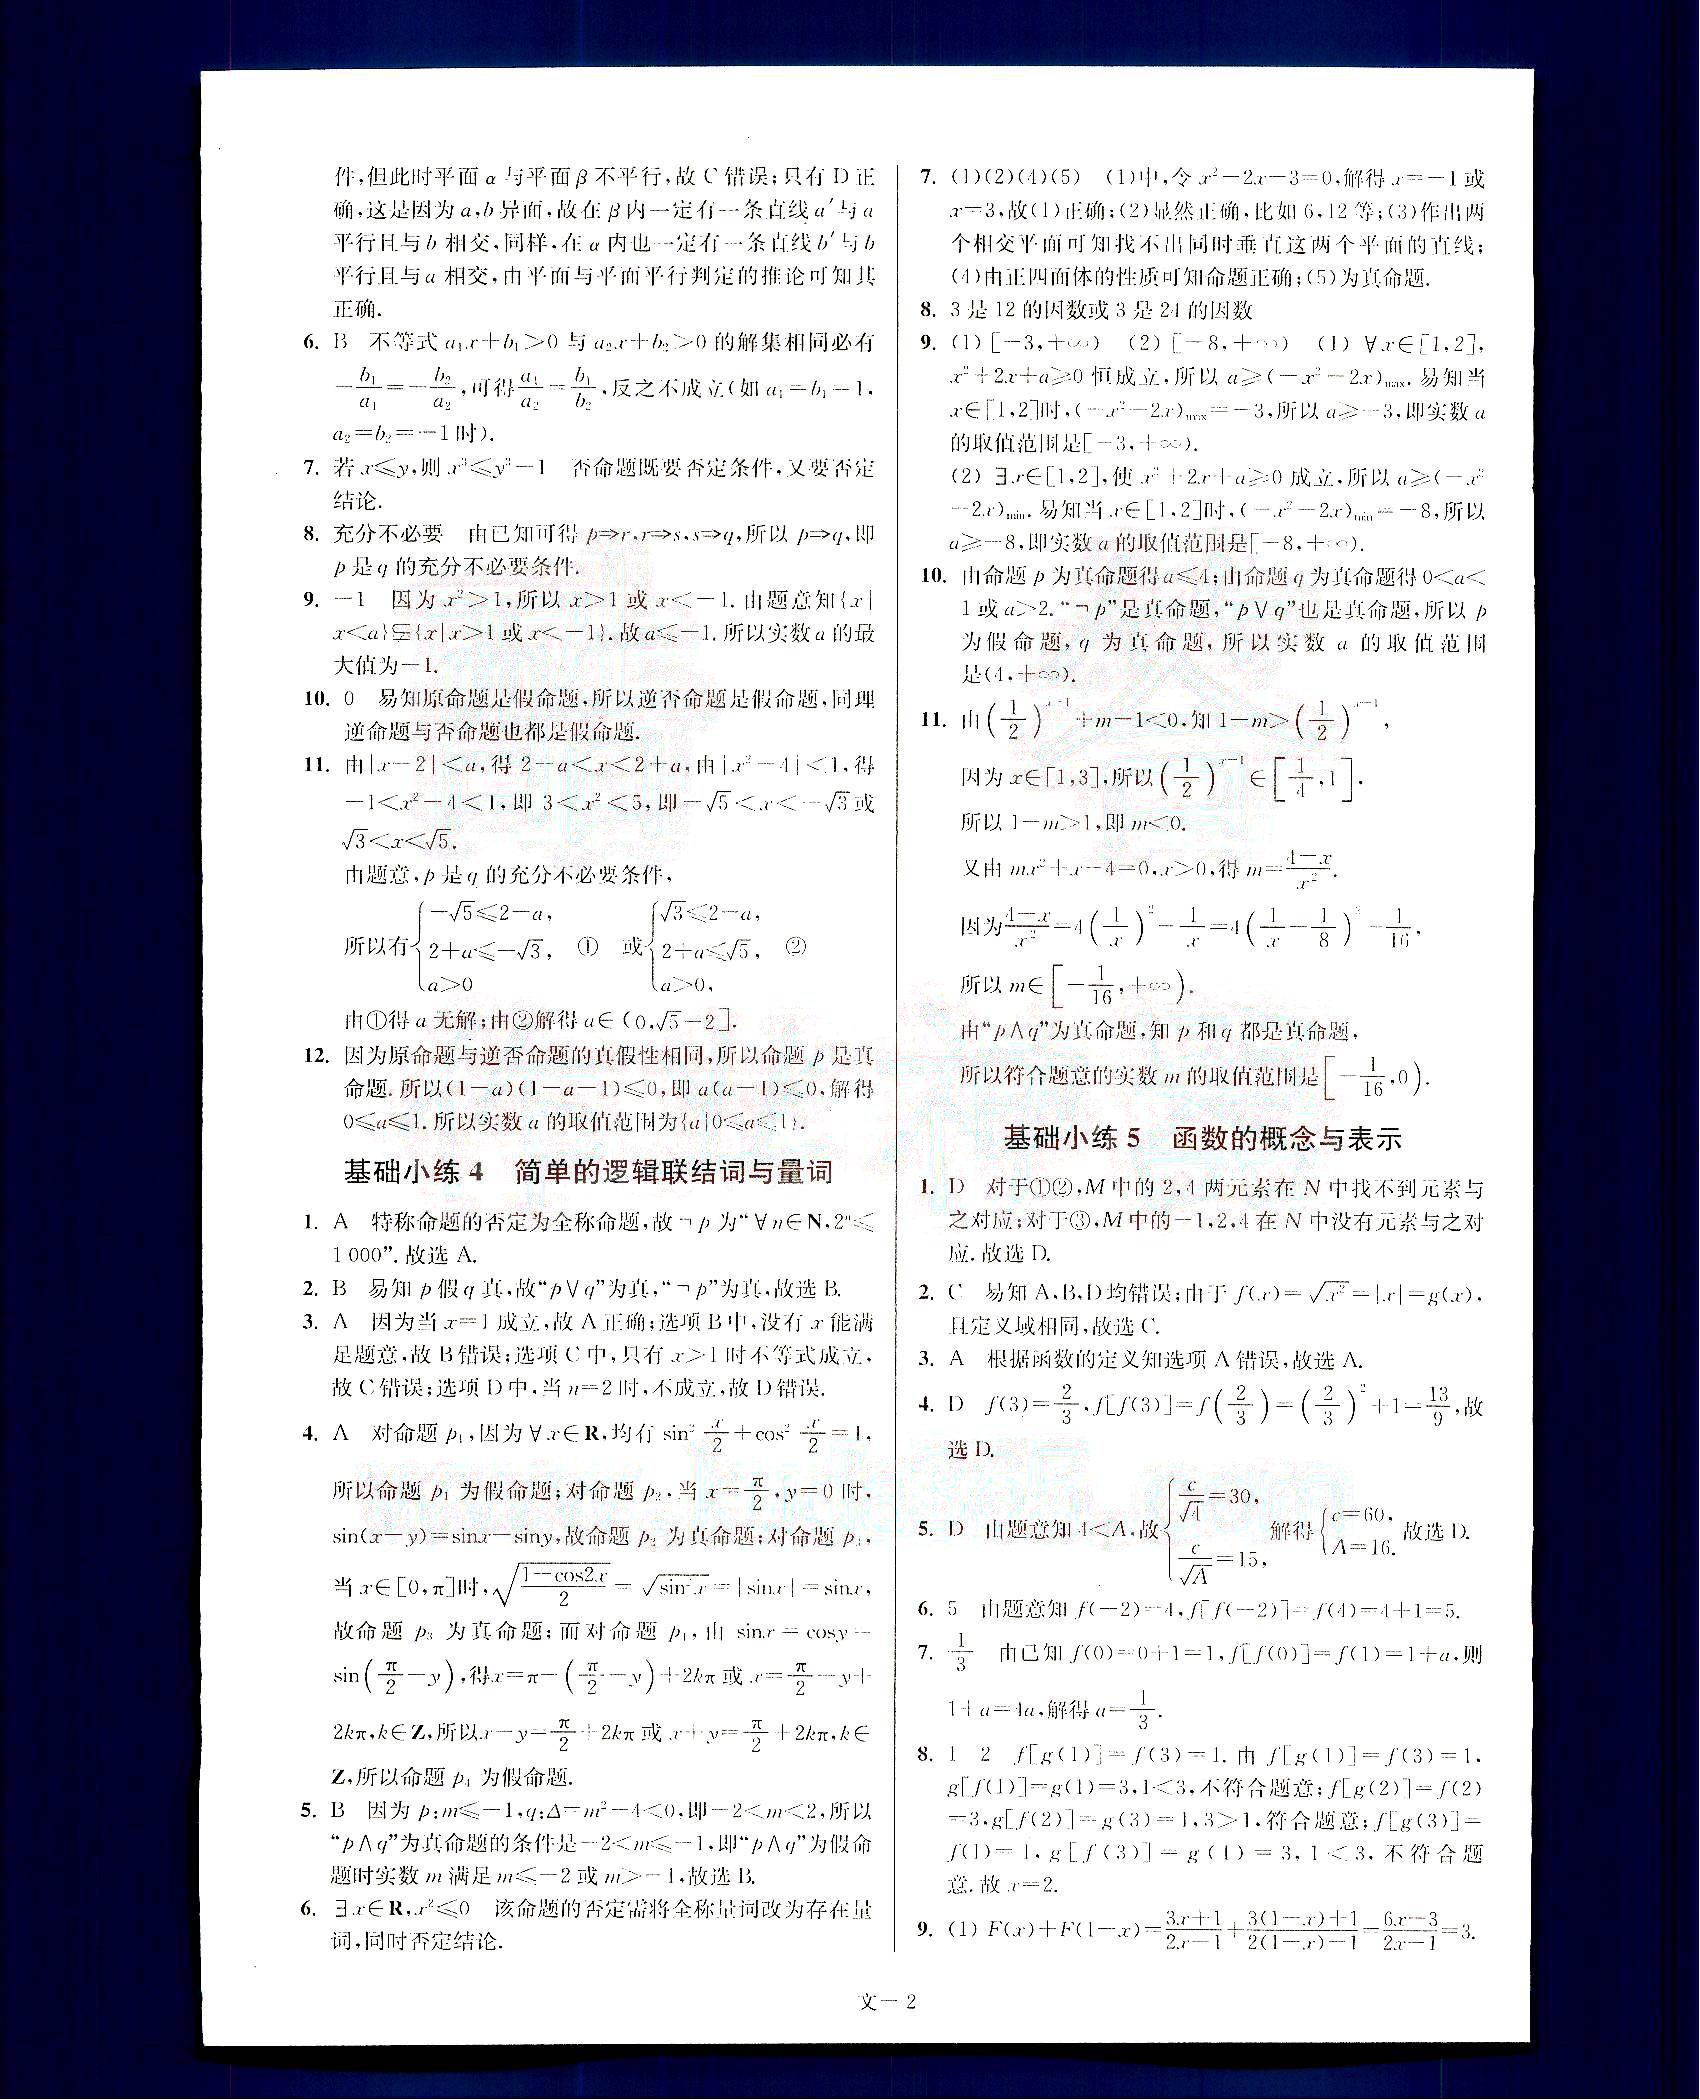 小题狂做-高考数学-文科-最基础篇南京大学出版社 第1部分 [2]